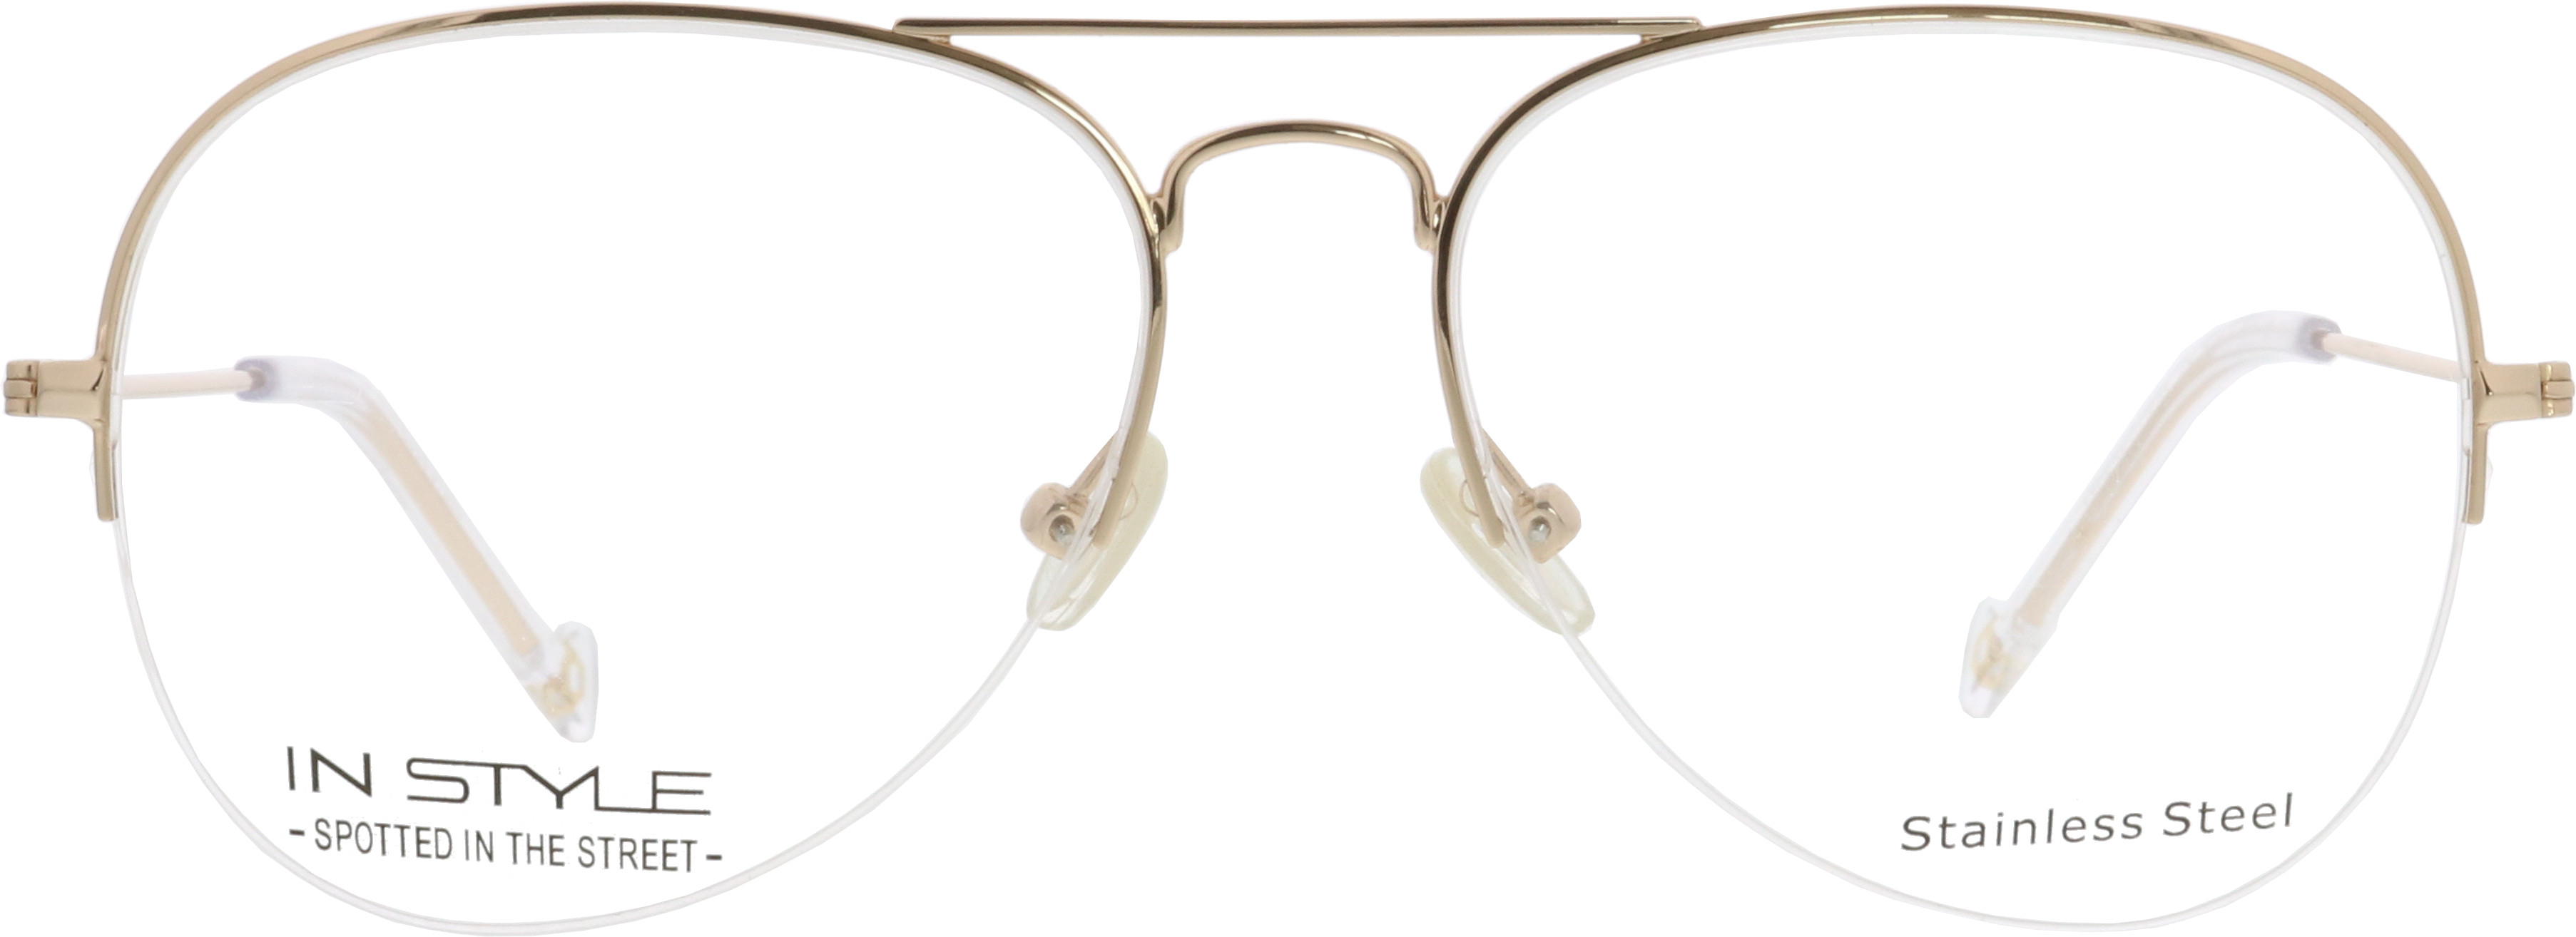 Praktisches Accessoire: Sonnenbrillen mit Clip schon ab 34,90€